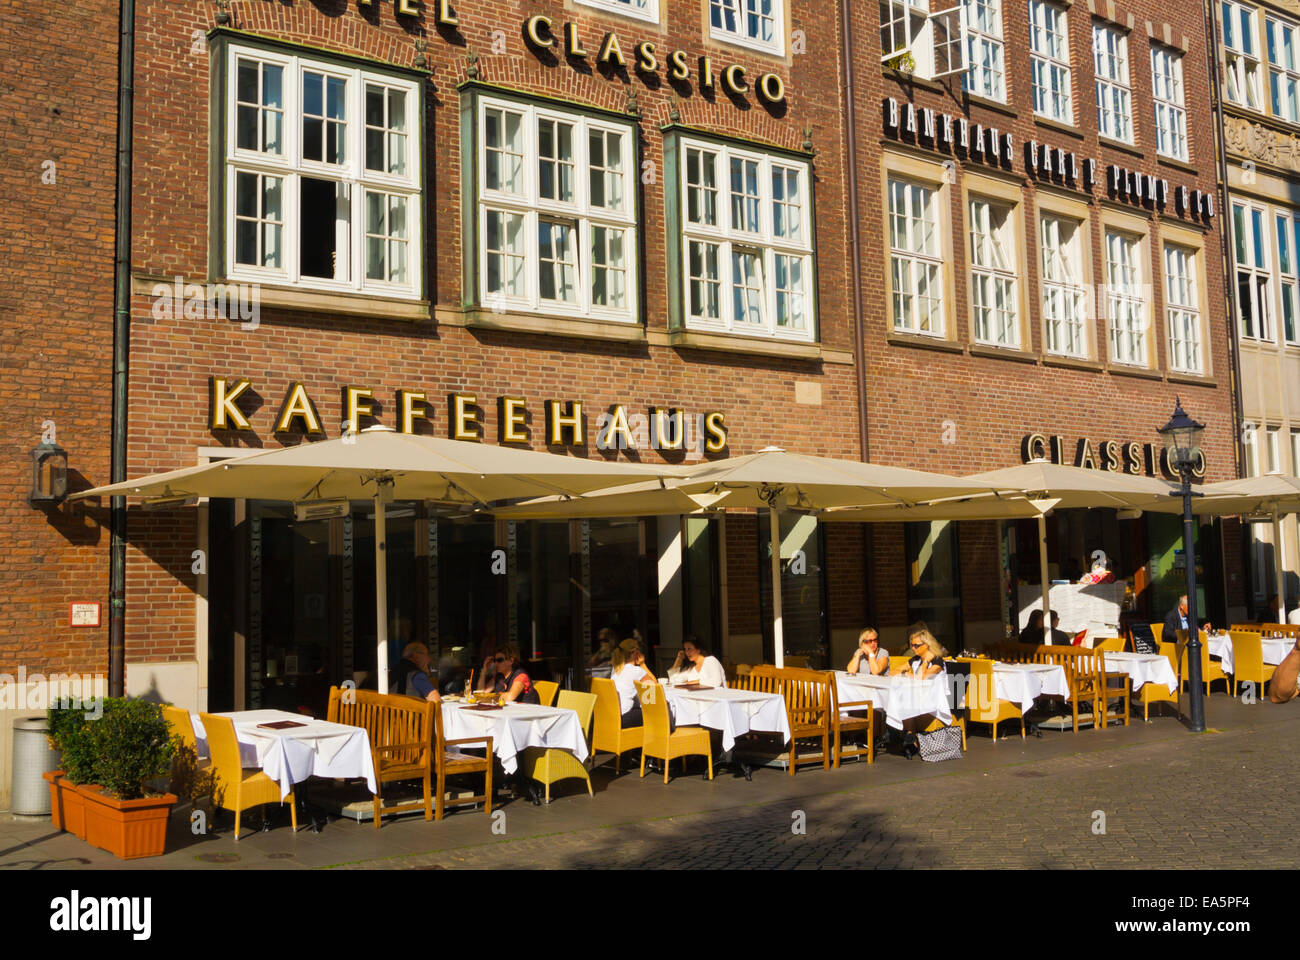 Kaffeehaus ristorante Classico, Marktplatz, piazza principale, Altstadt, città vecchia di Brema, Germania Foto Stock